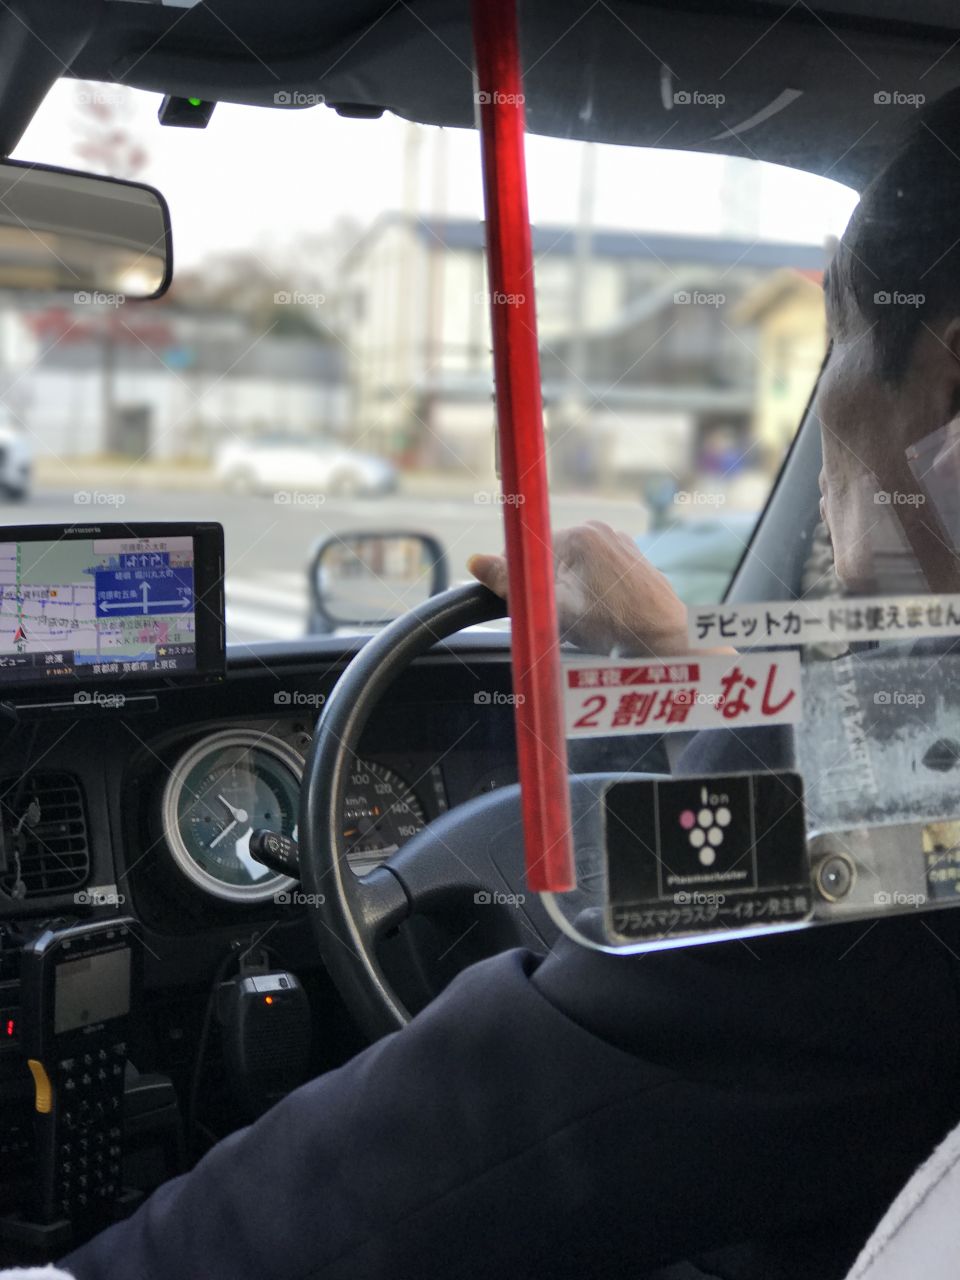 Cab ride